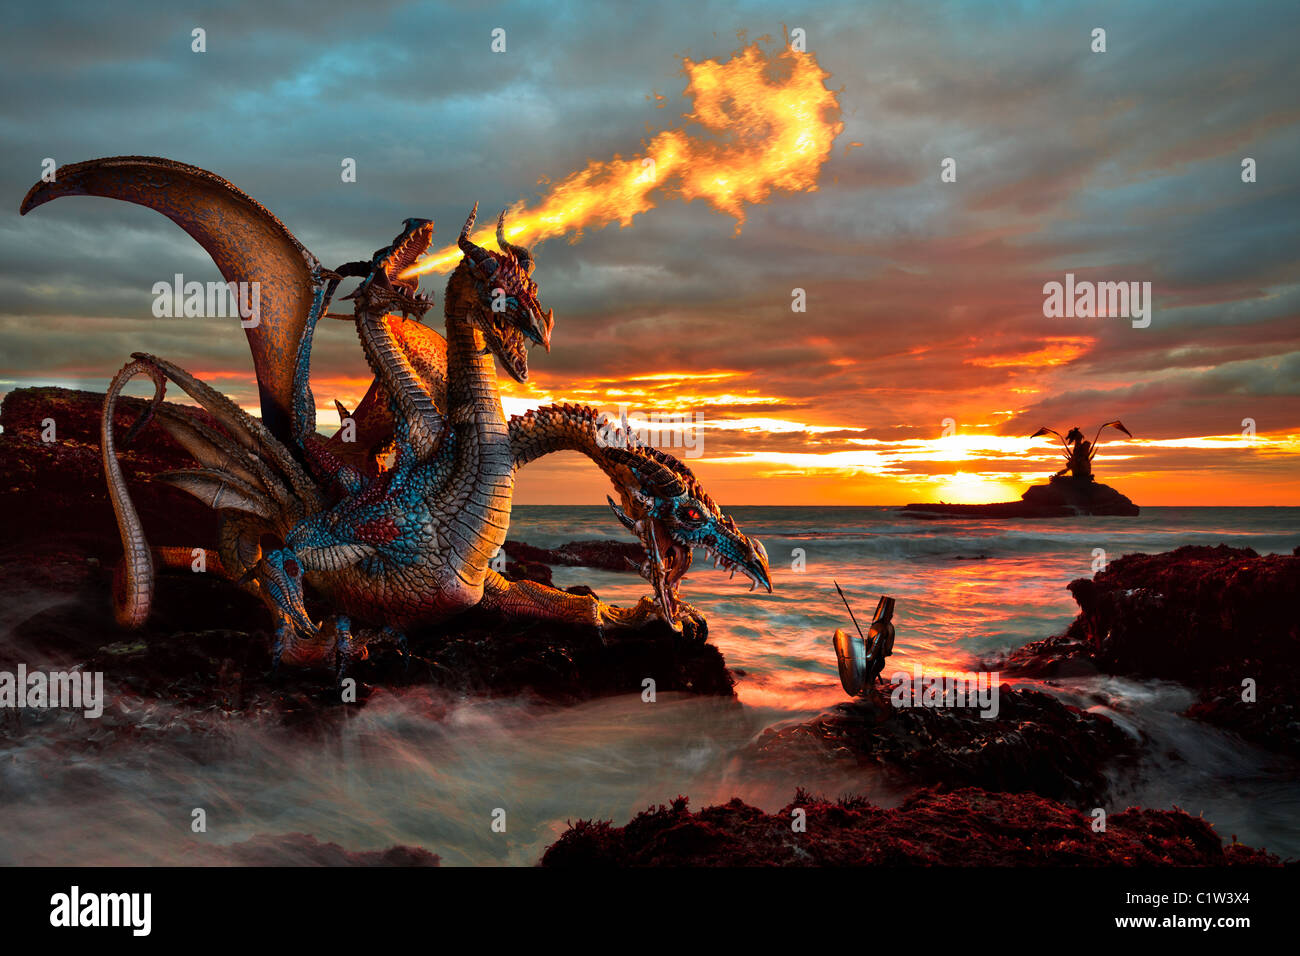 Eine Drachen-Monster kämpft gegen einen Ritter, unter dem Licht des einen Sonnenuntergang am Meer. Stockfoto